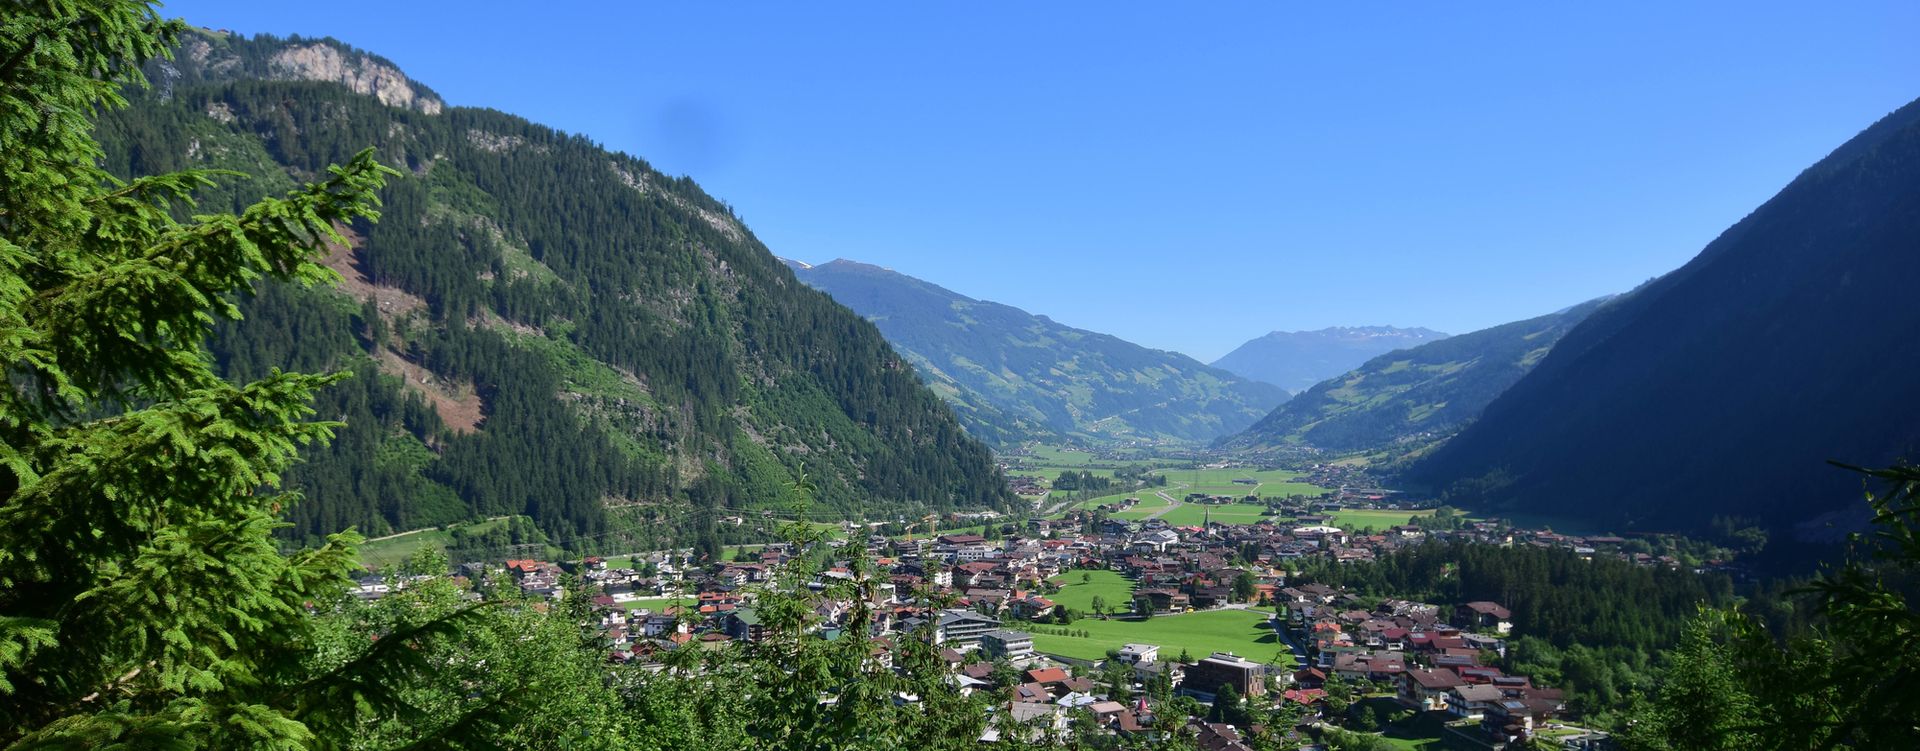 Blick auf den Ort Mayrhofen im Sommer